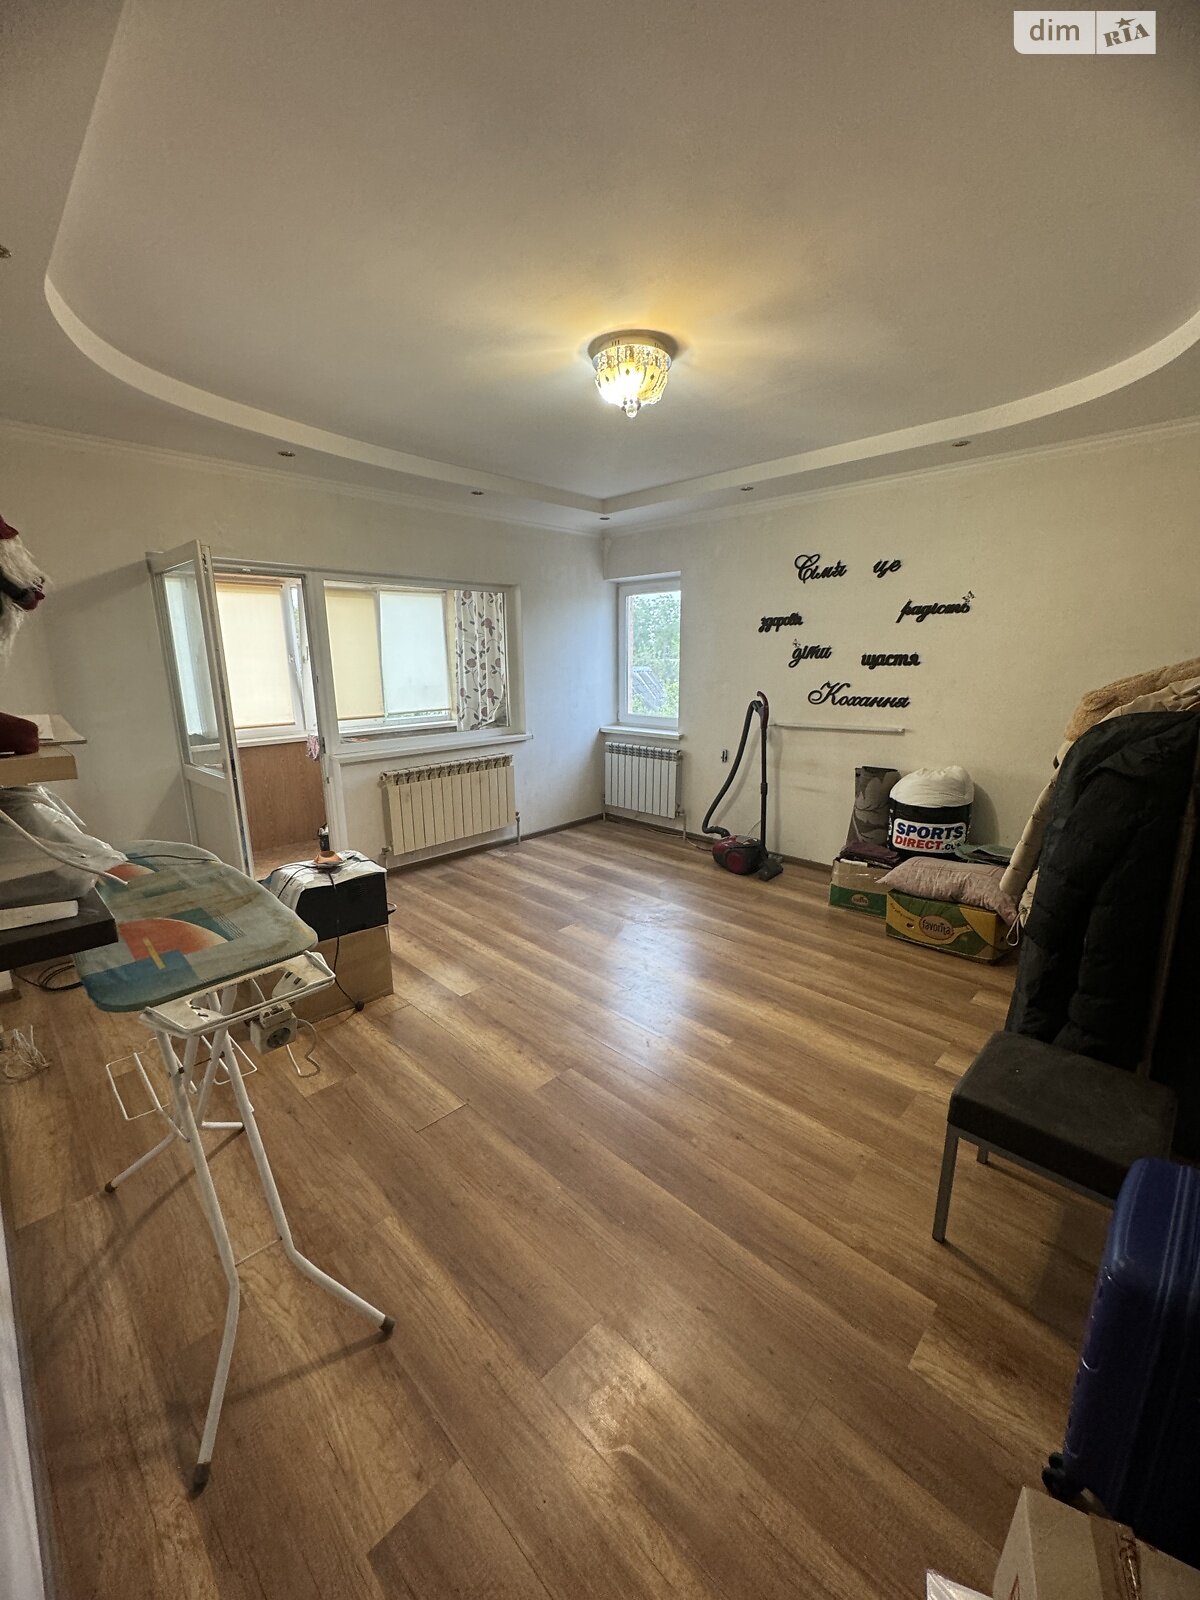 Продажа трехкомнатной квартиры в Станишовке, на ул. Королева 2, кв. 5, фото 1